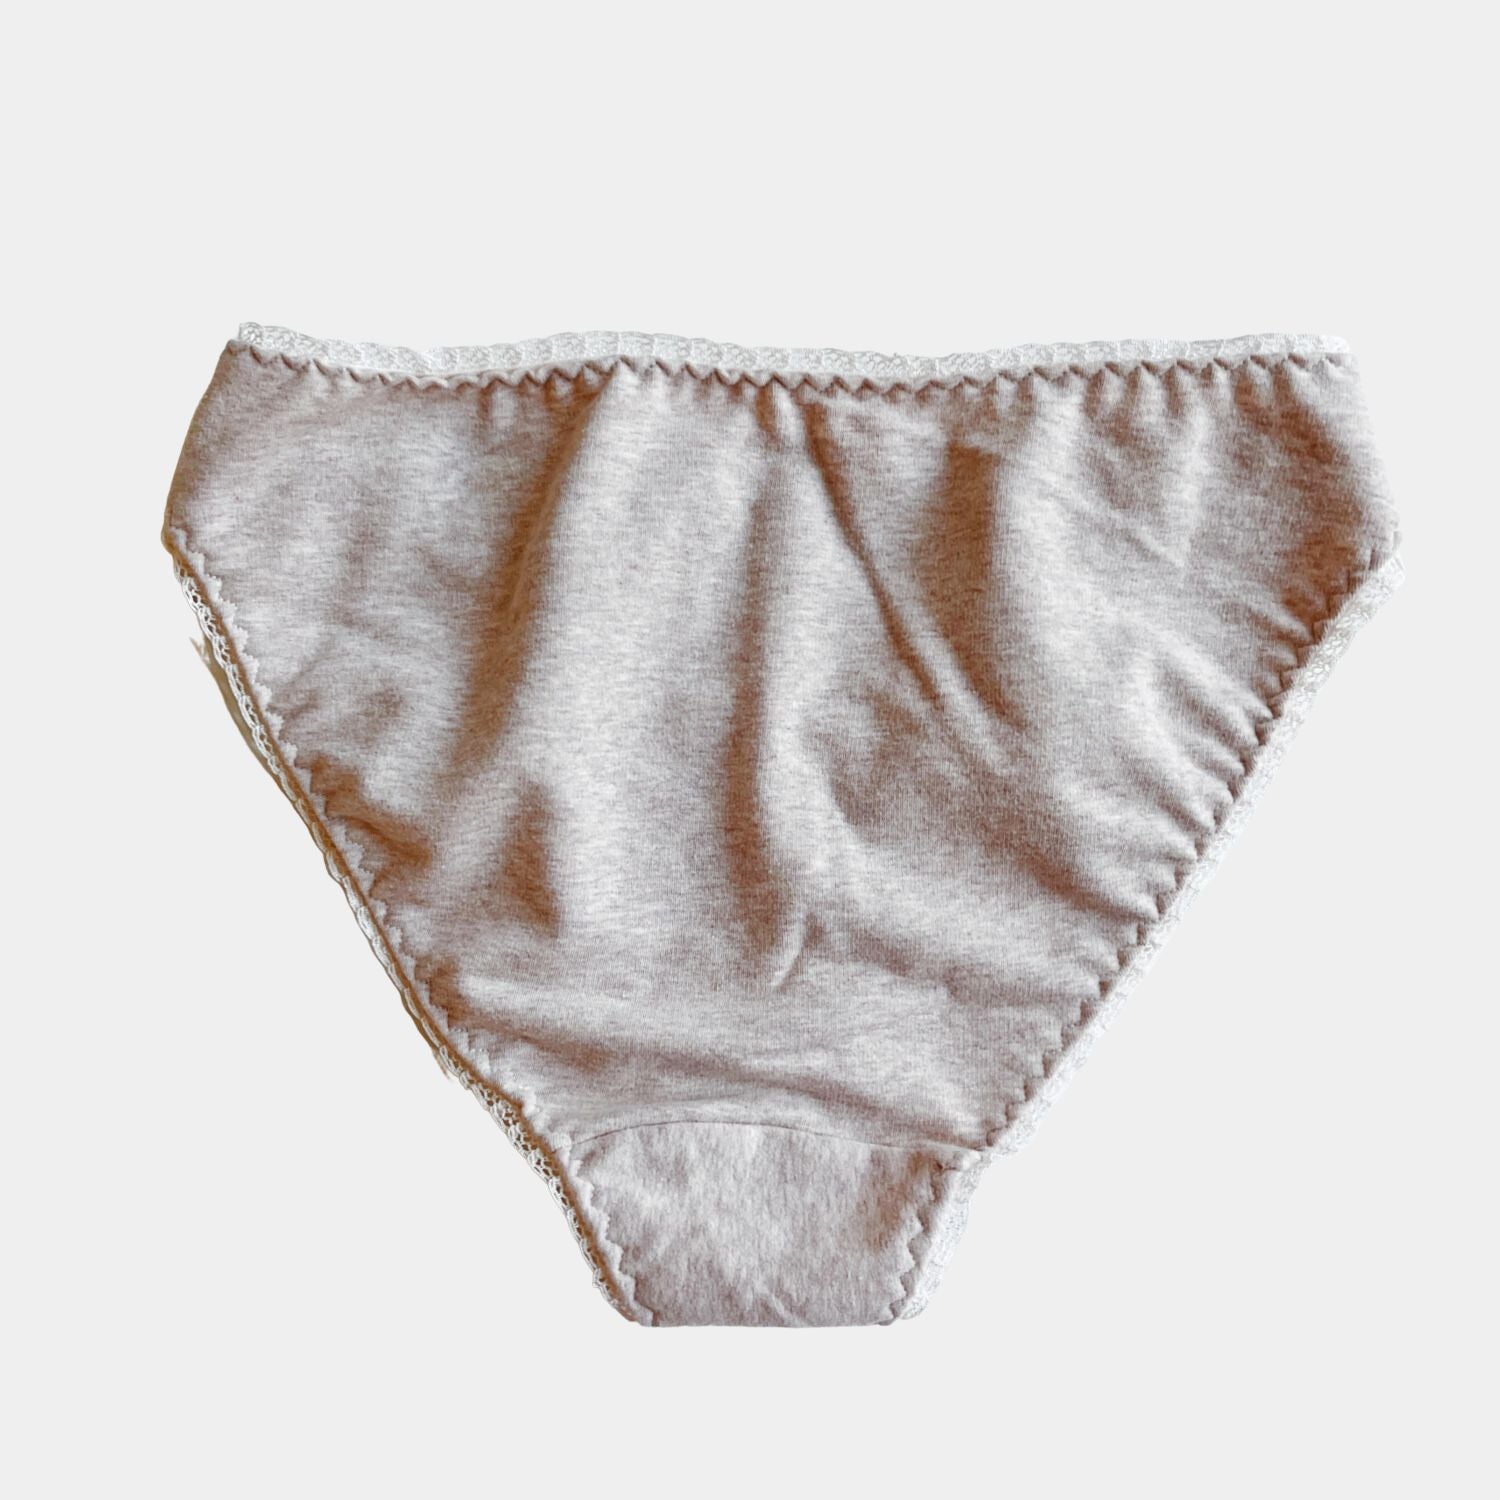 Women's bikini underwear brief